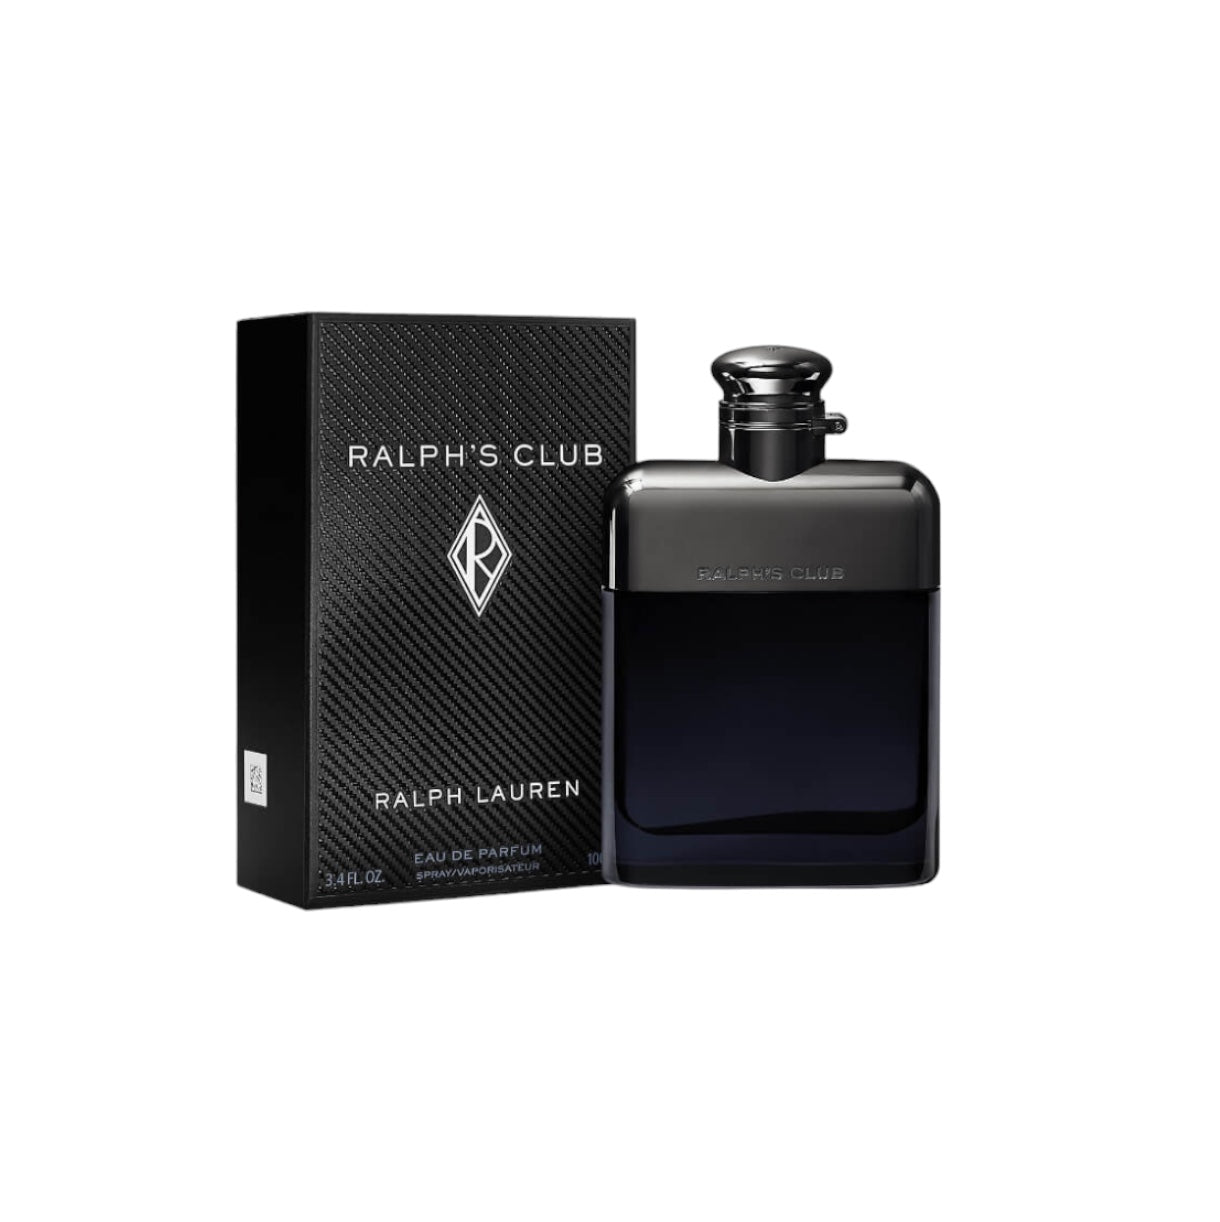 RALPH LAUREN - Ralph's Club - Eau de Parfum - 100ML